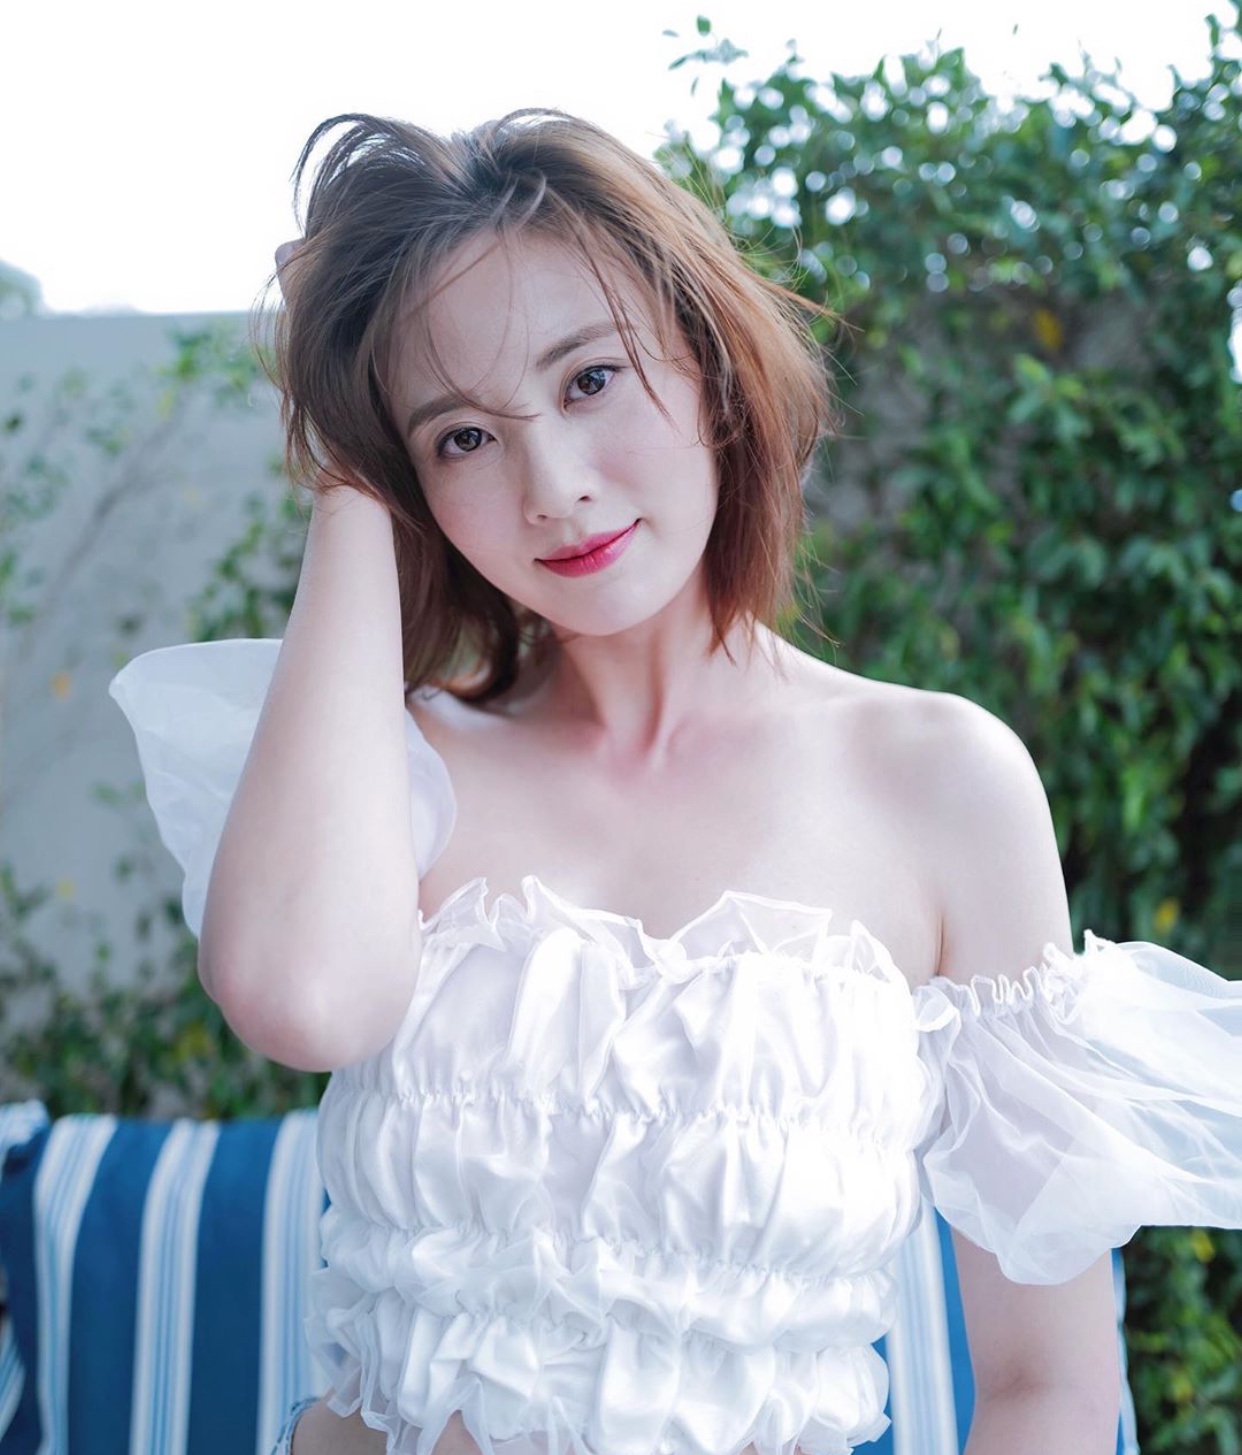 《多功能老婆》主演朱晨丽投诉洪永城在拍亲热戏时过于主动